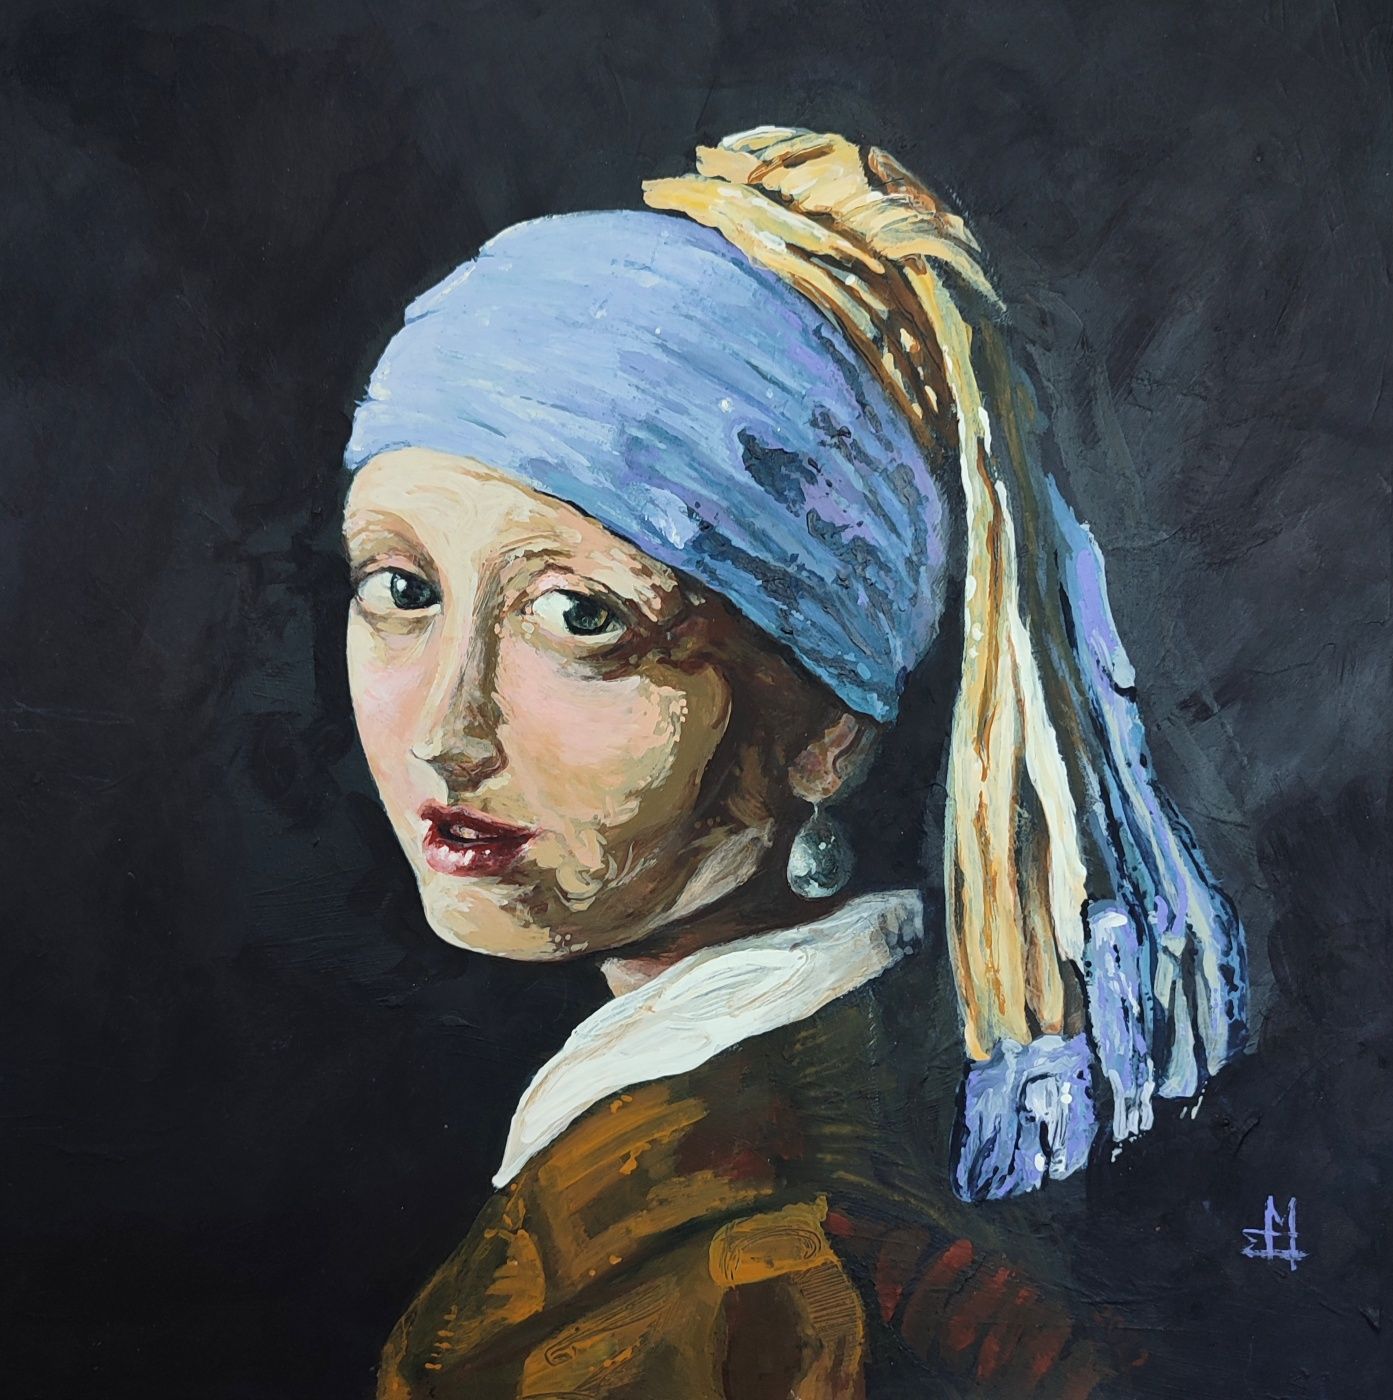 Reprodukcja obrazu "Dziewczyna z perłą" Jan Vermeer